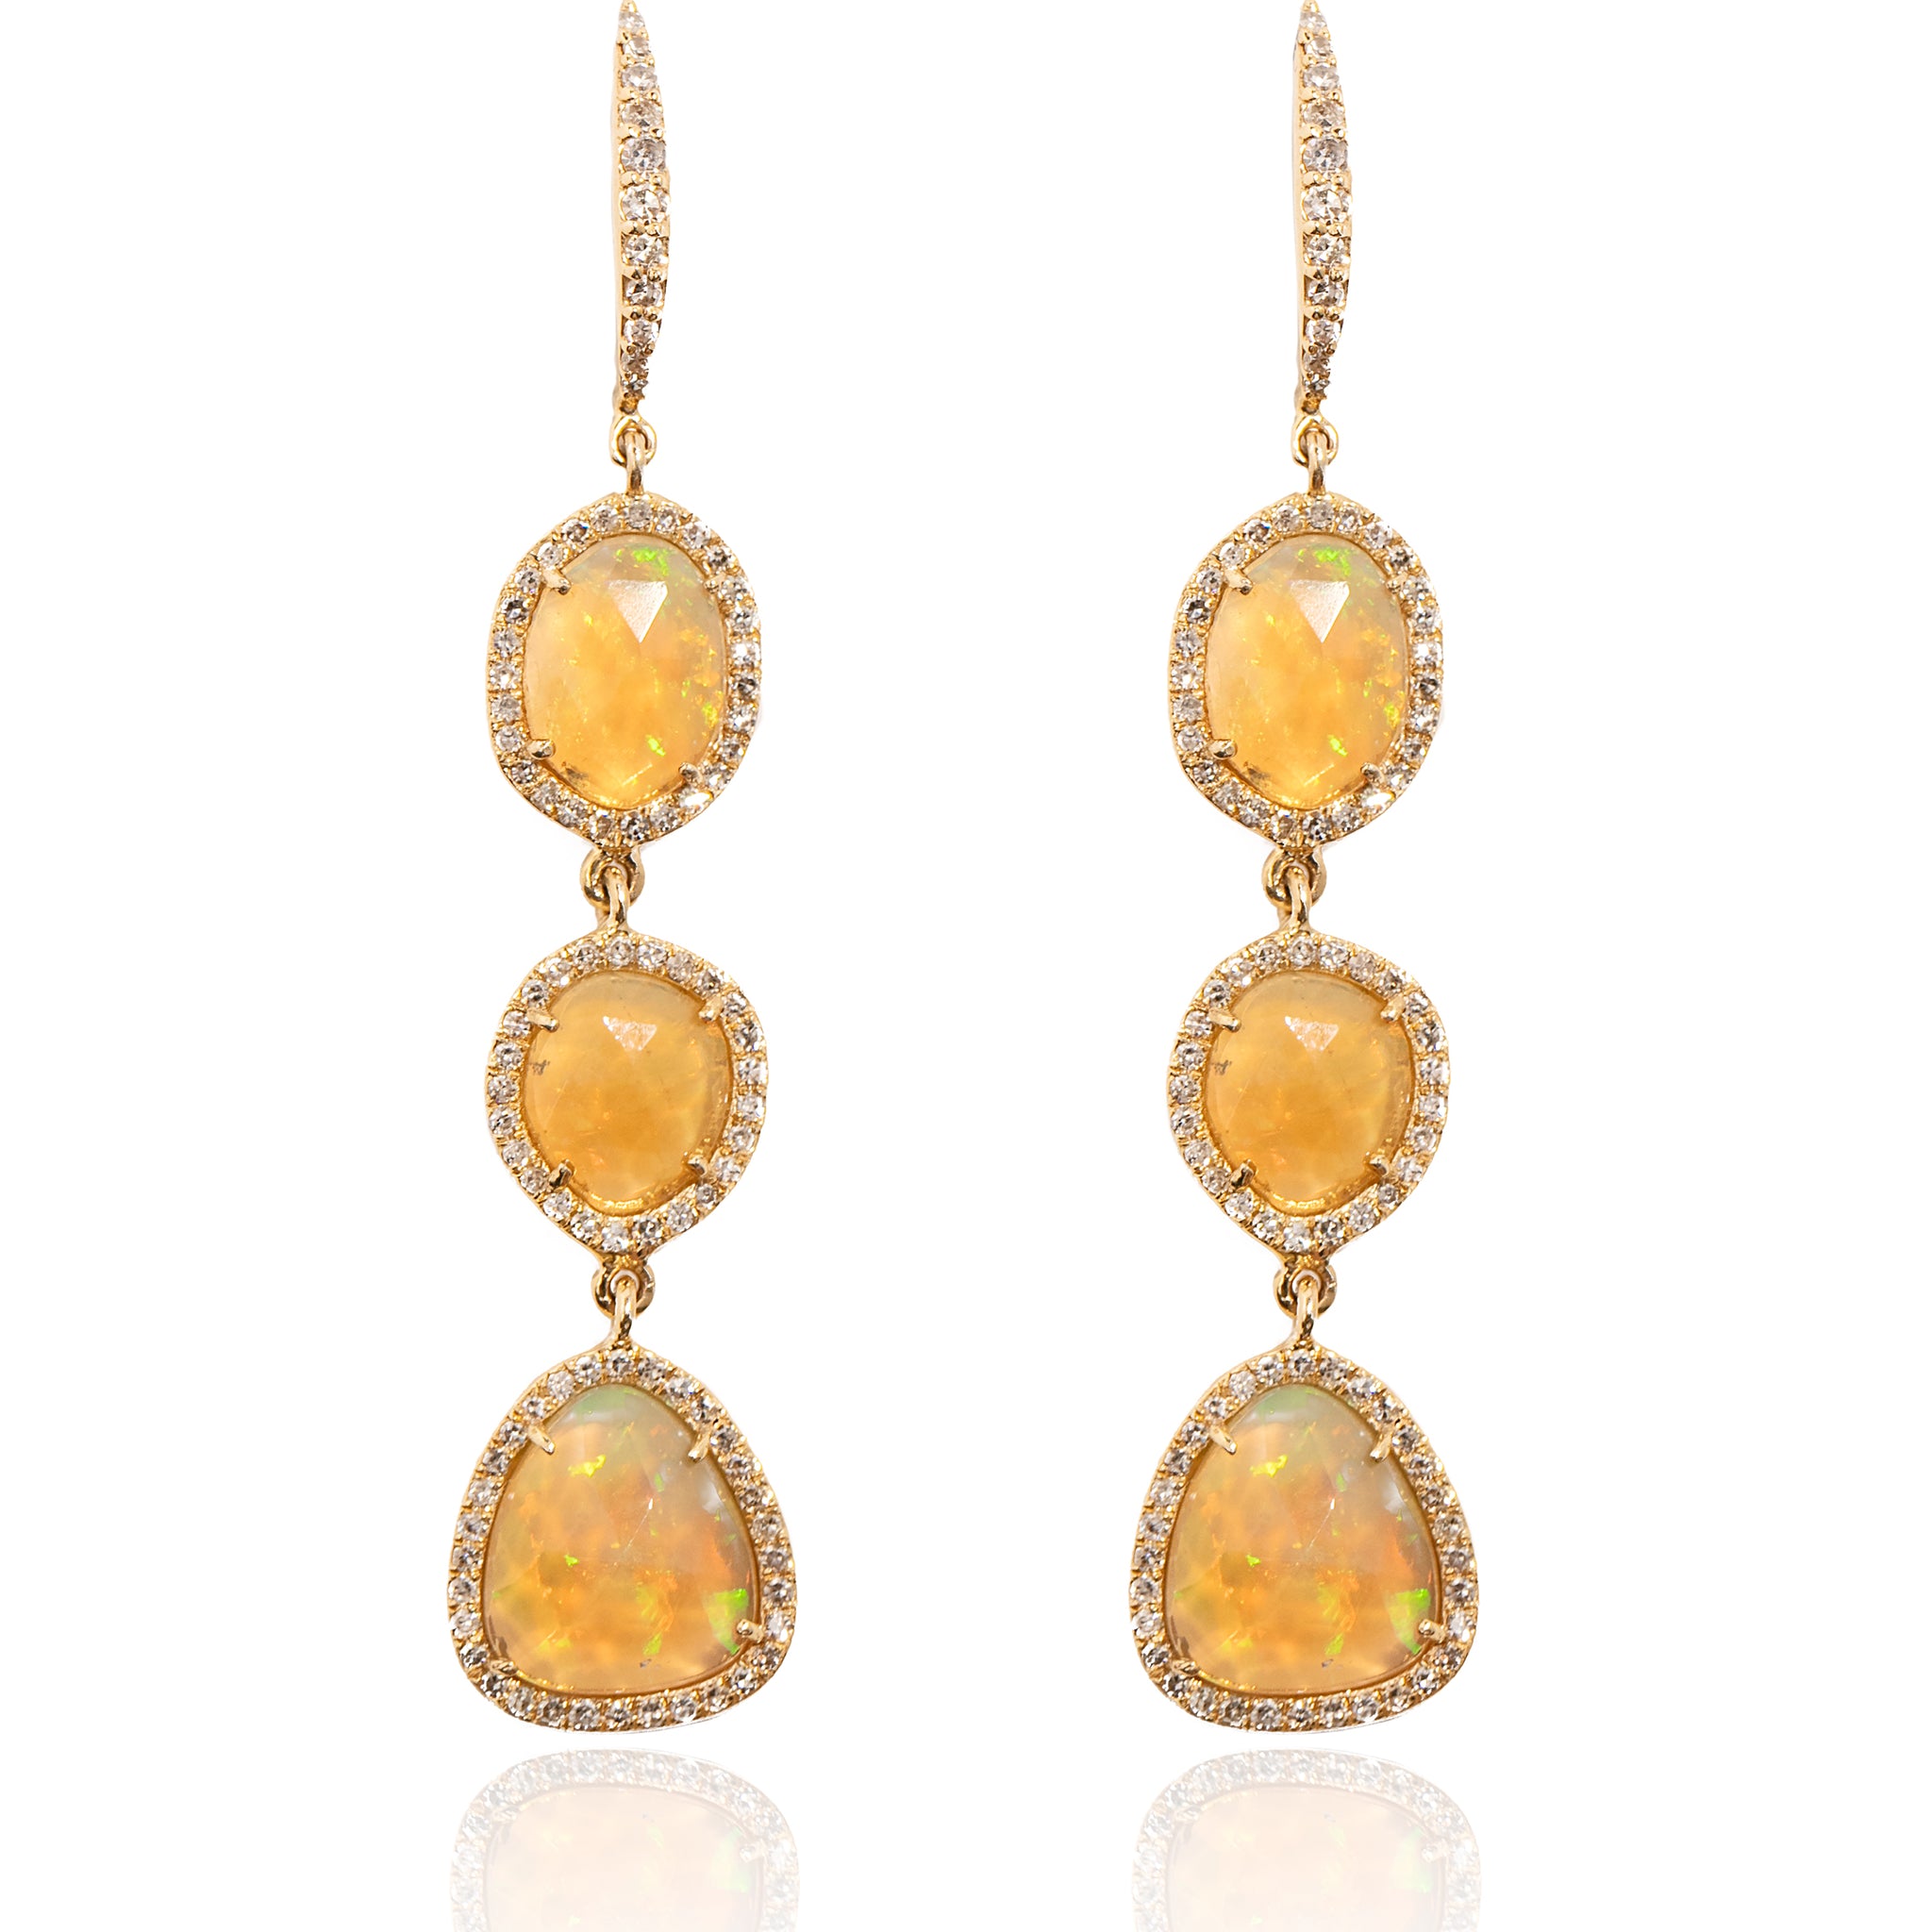 L.A. STEIN 3 Diamond Opal Earrings in 14k Yellow Gold